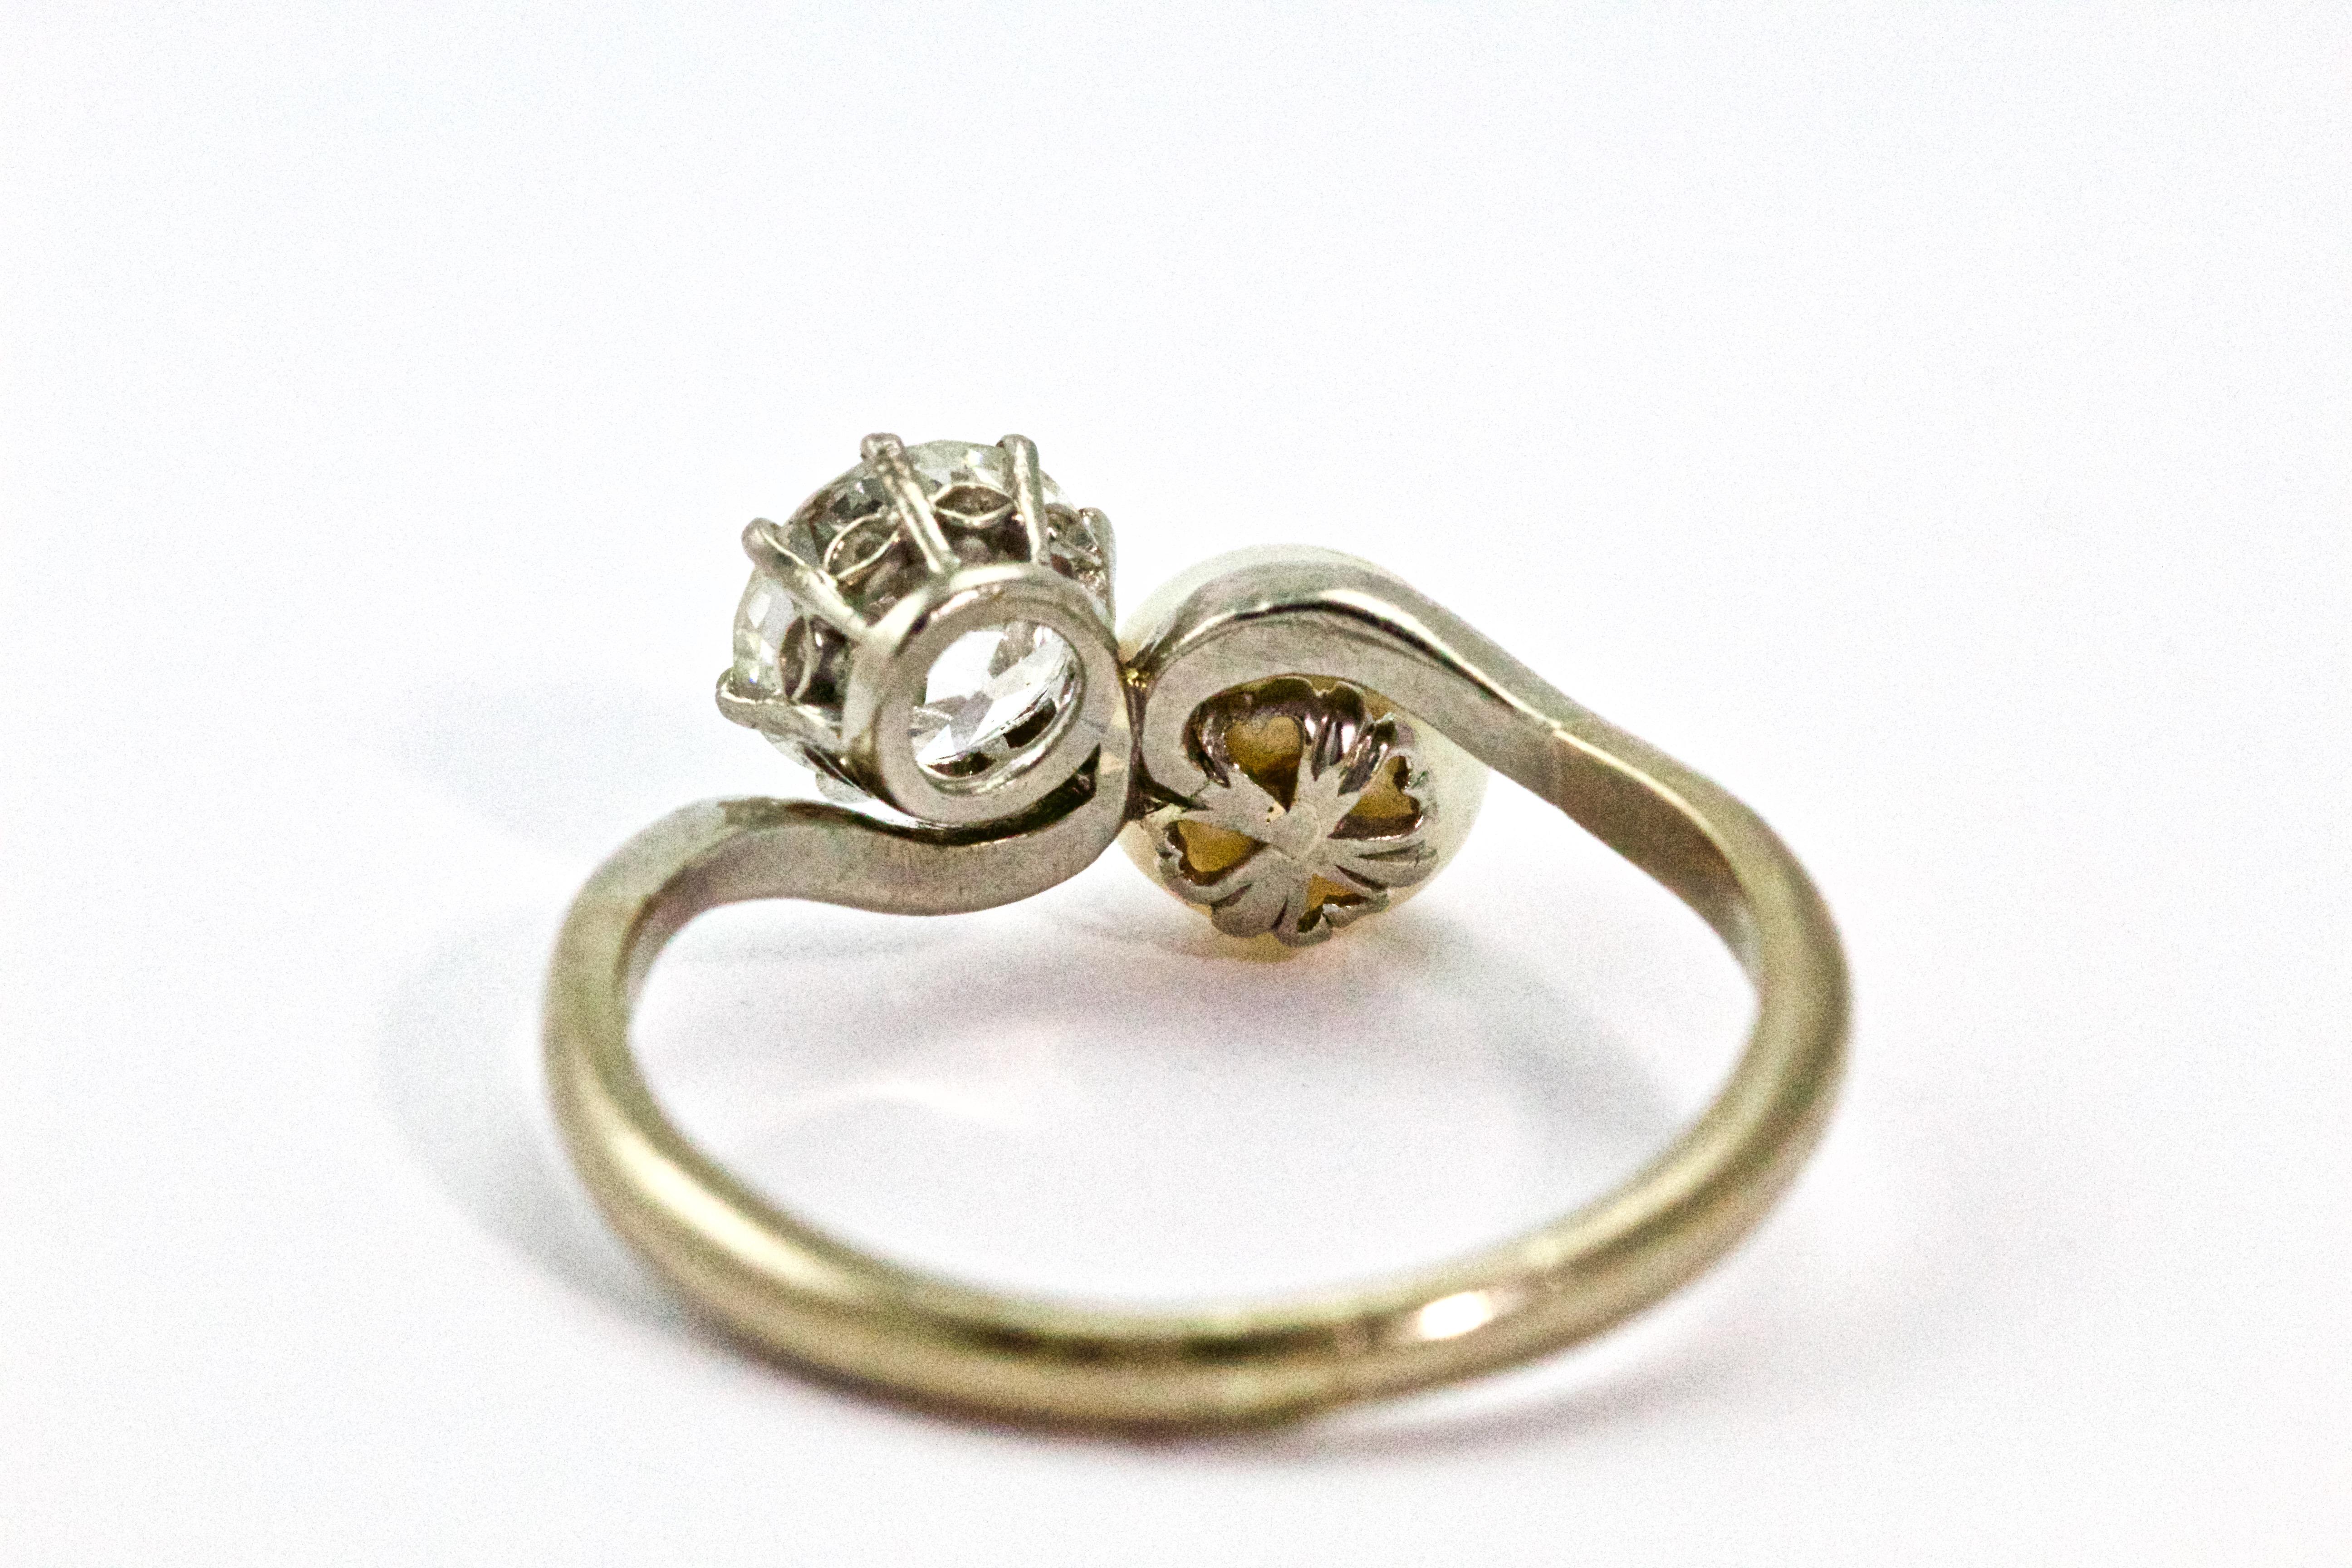 18 carat white gold 1 carat diamond engagement ring